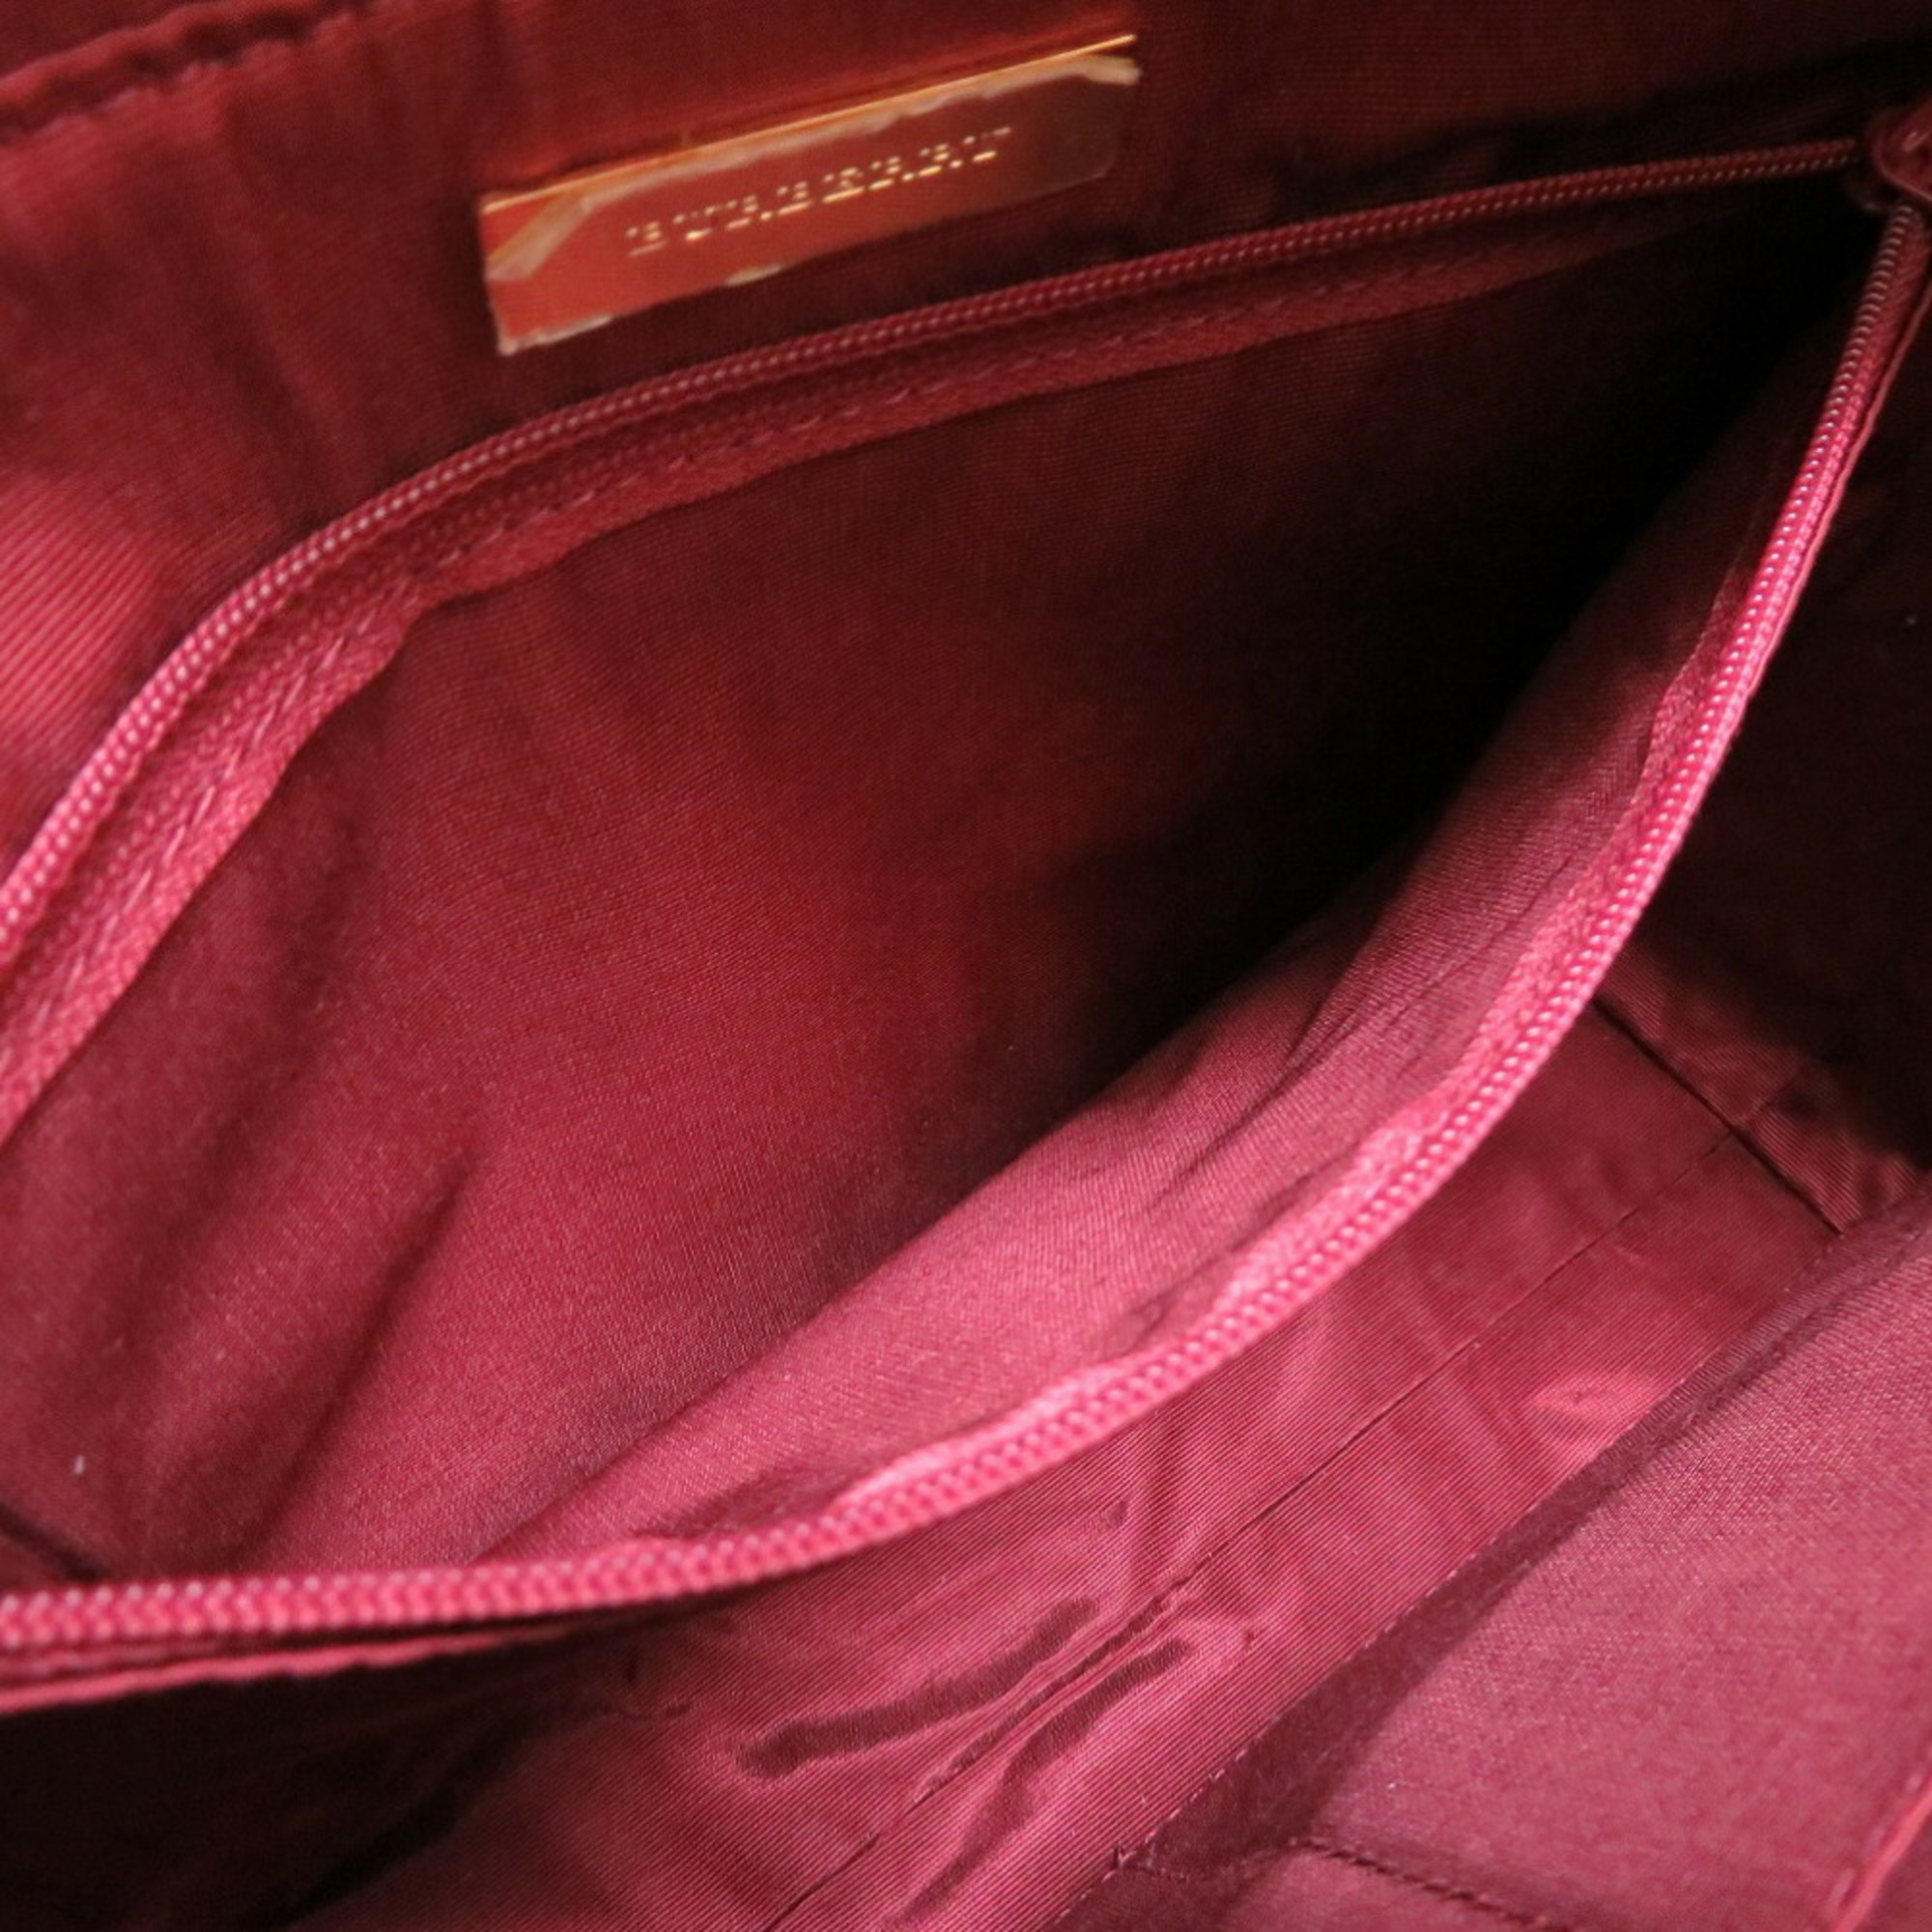 Burberry Check Canvas Leather Beige Bordeaux Handbag Bag 0092 BURBERRY